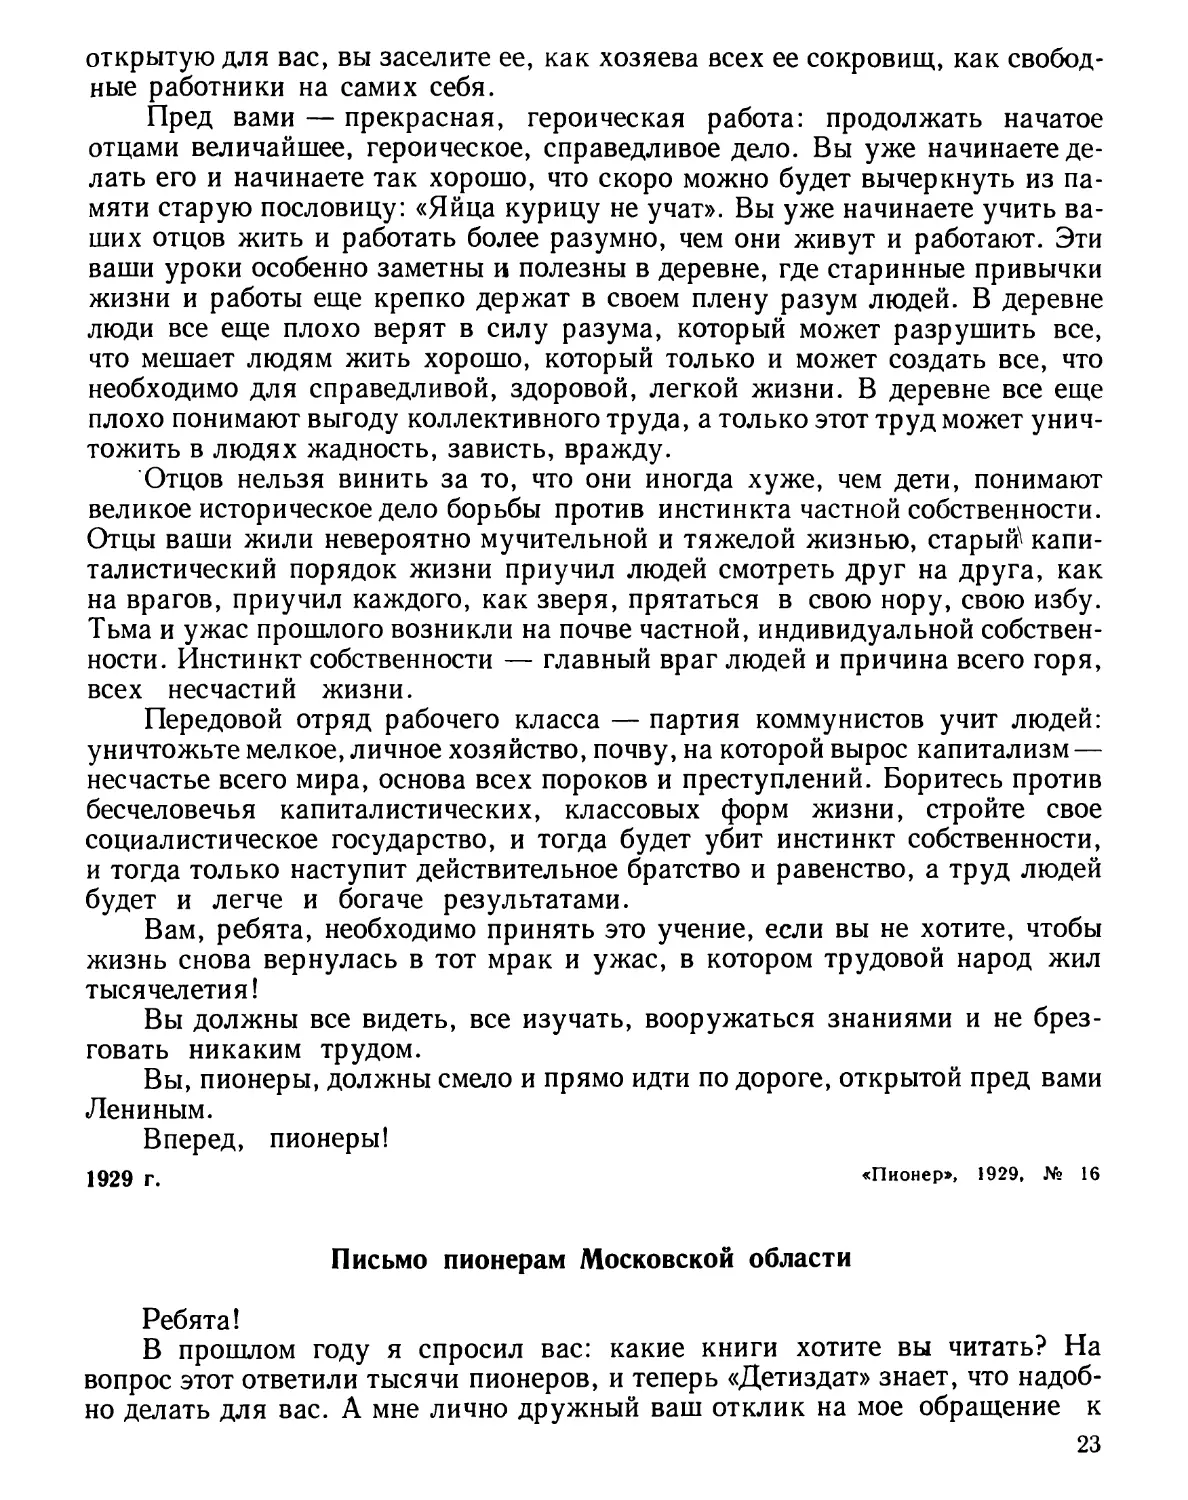 Письмо пионерам Московской области